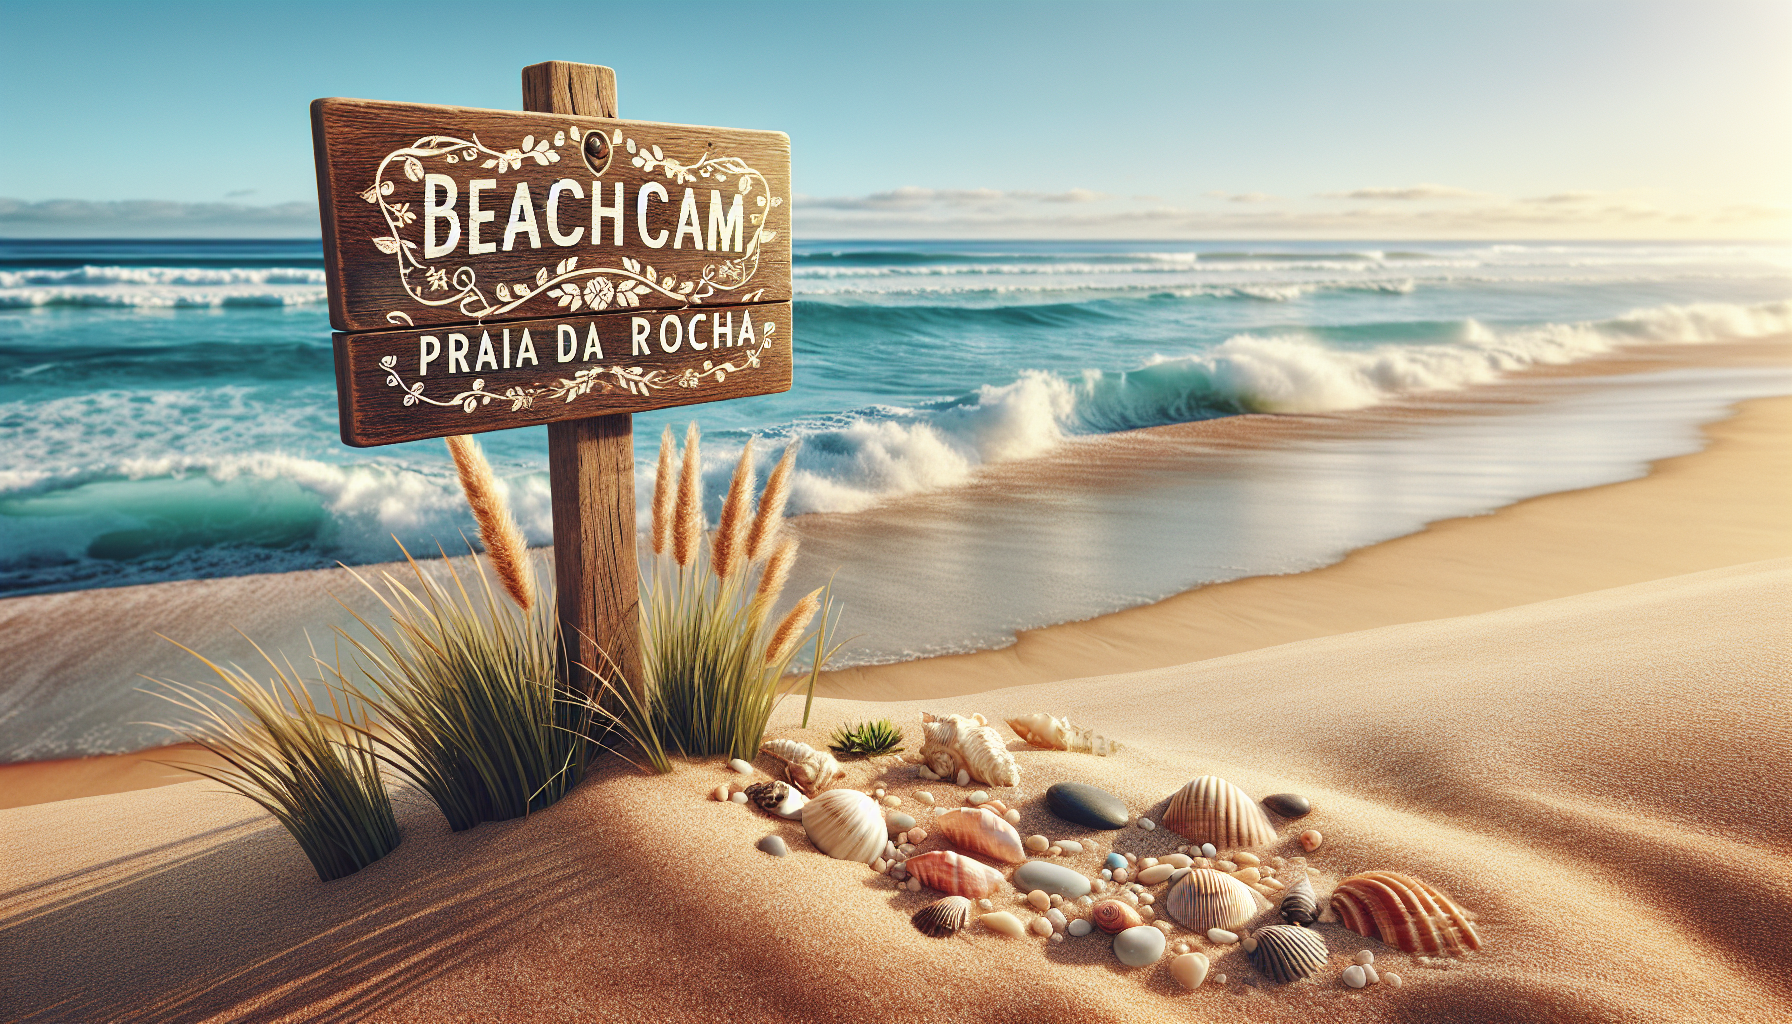 Beachcam Praia da Rocha ao Vivo: A Melhor Vista das Ondas em Tempo Real